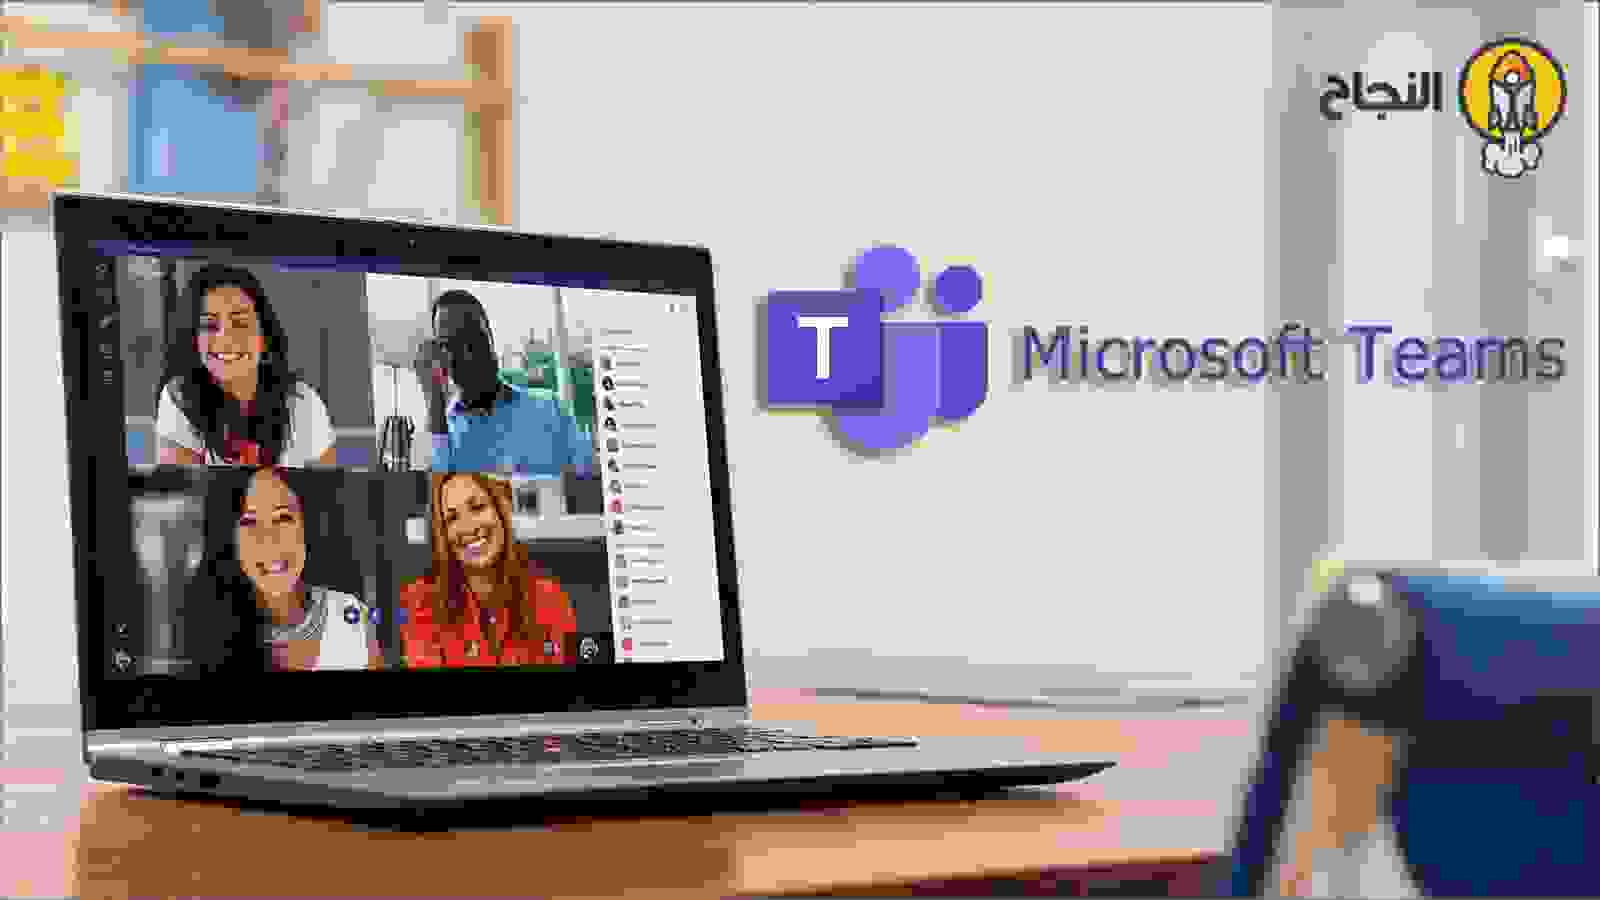 مايكروسوفت تيمز (Microsoft Teams)